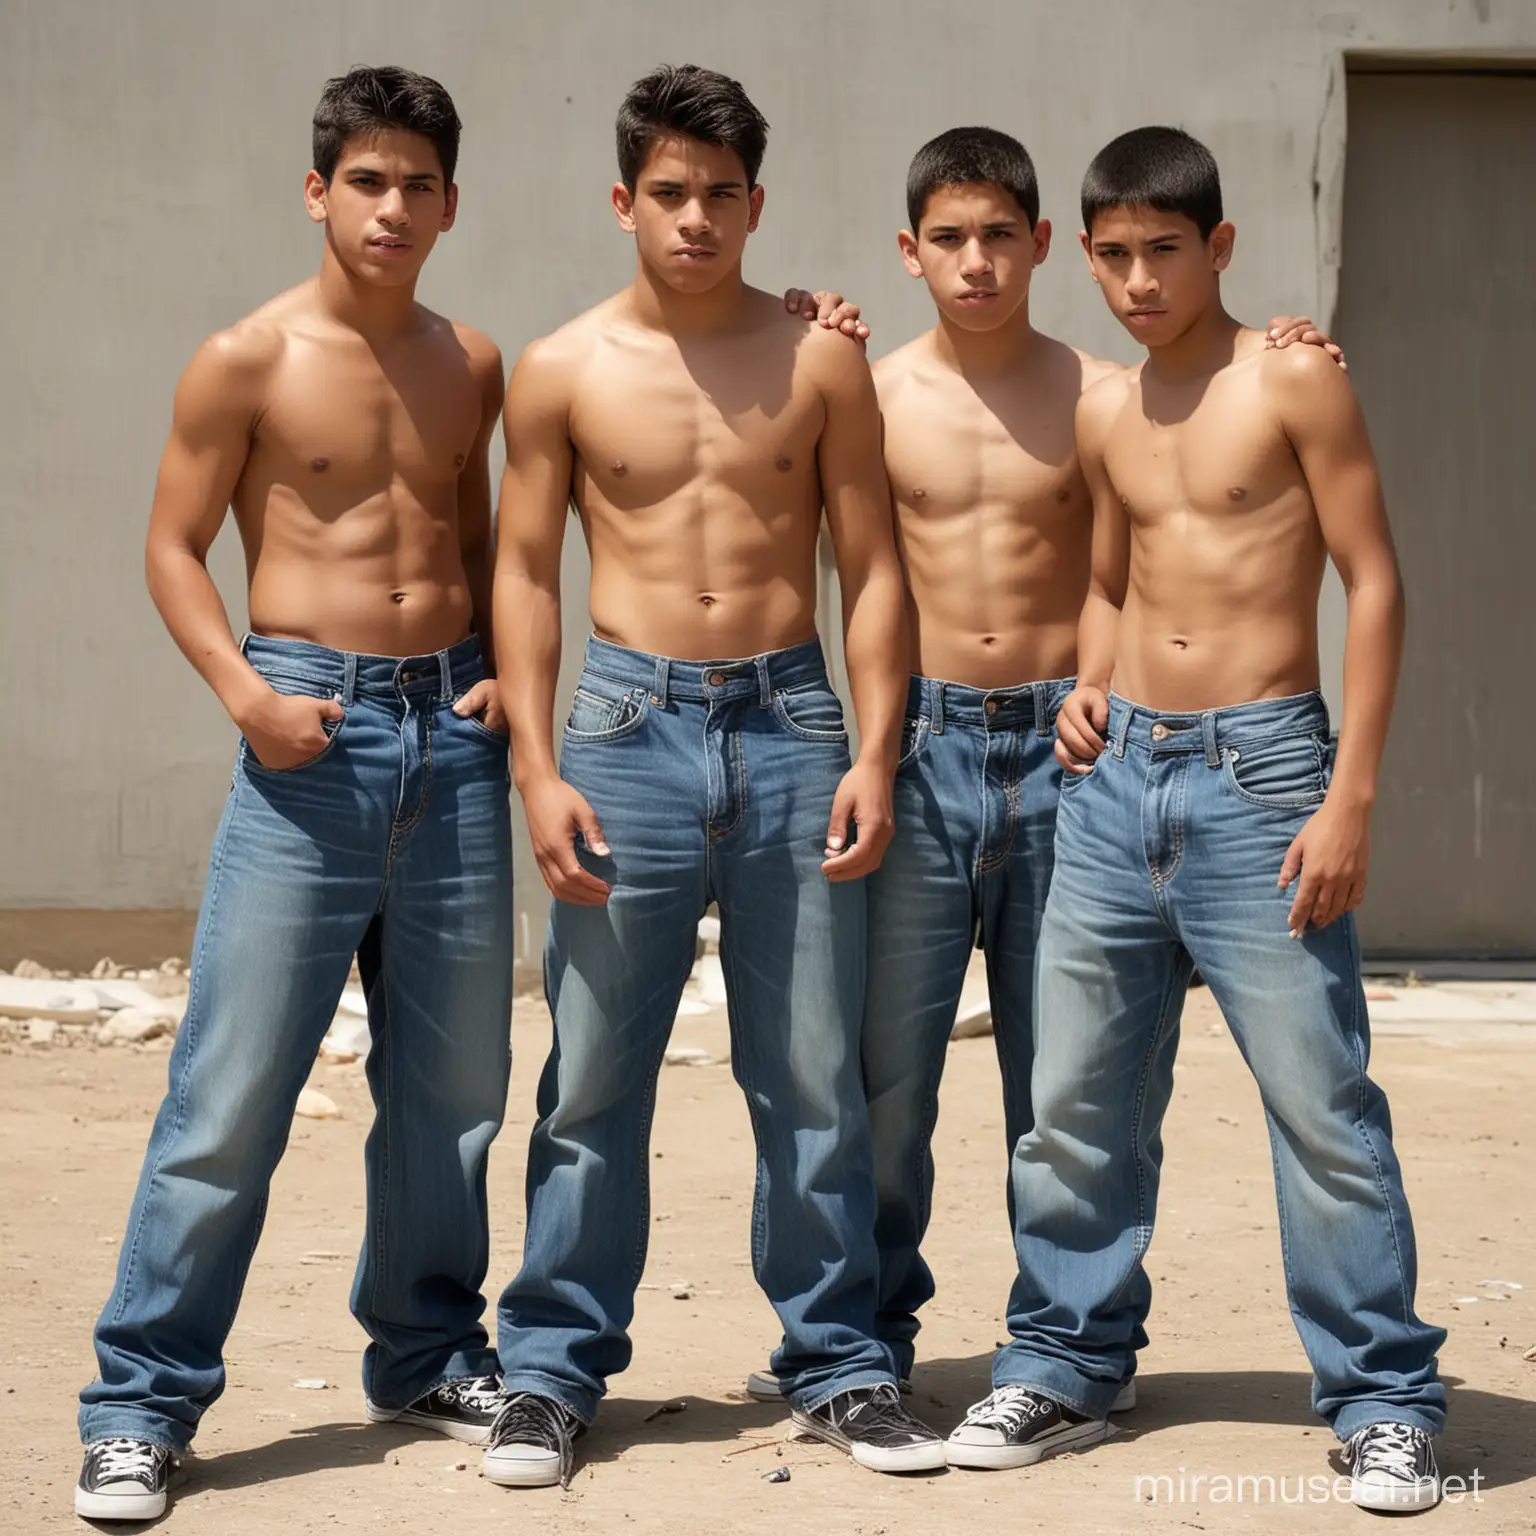 Hispanic Teenage Boys in Urban Setting